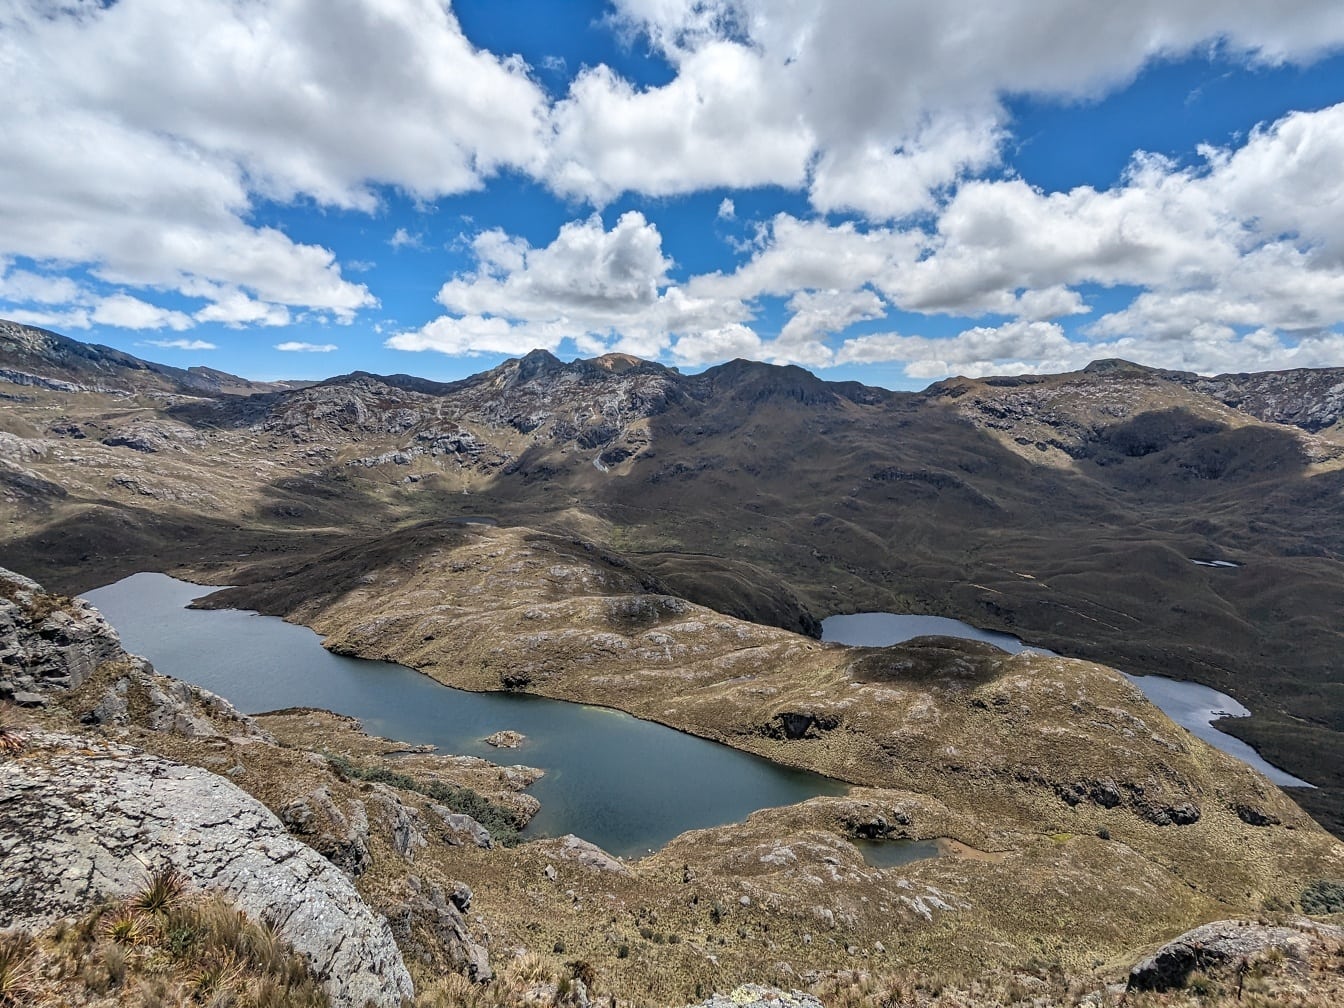 Toàn cảnh hồ nước được bao quanh bởi những ngọn núi trong công viên tự nhiên Cajas ở bang Cuenca, Ecuador